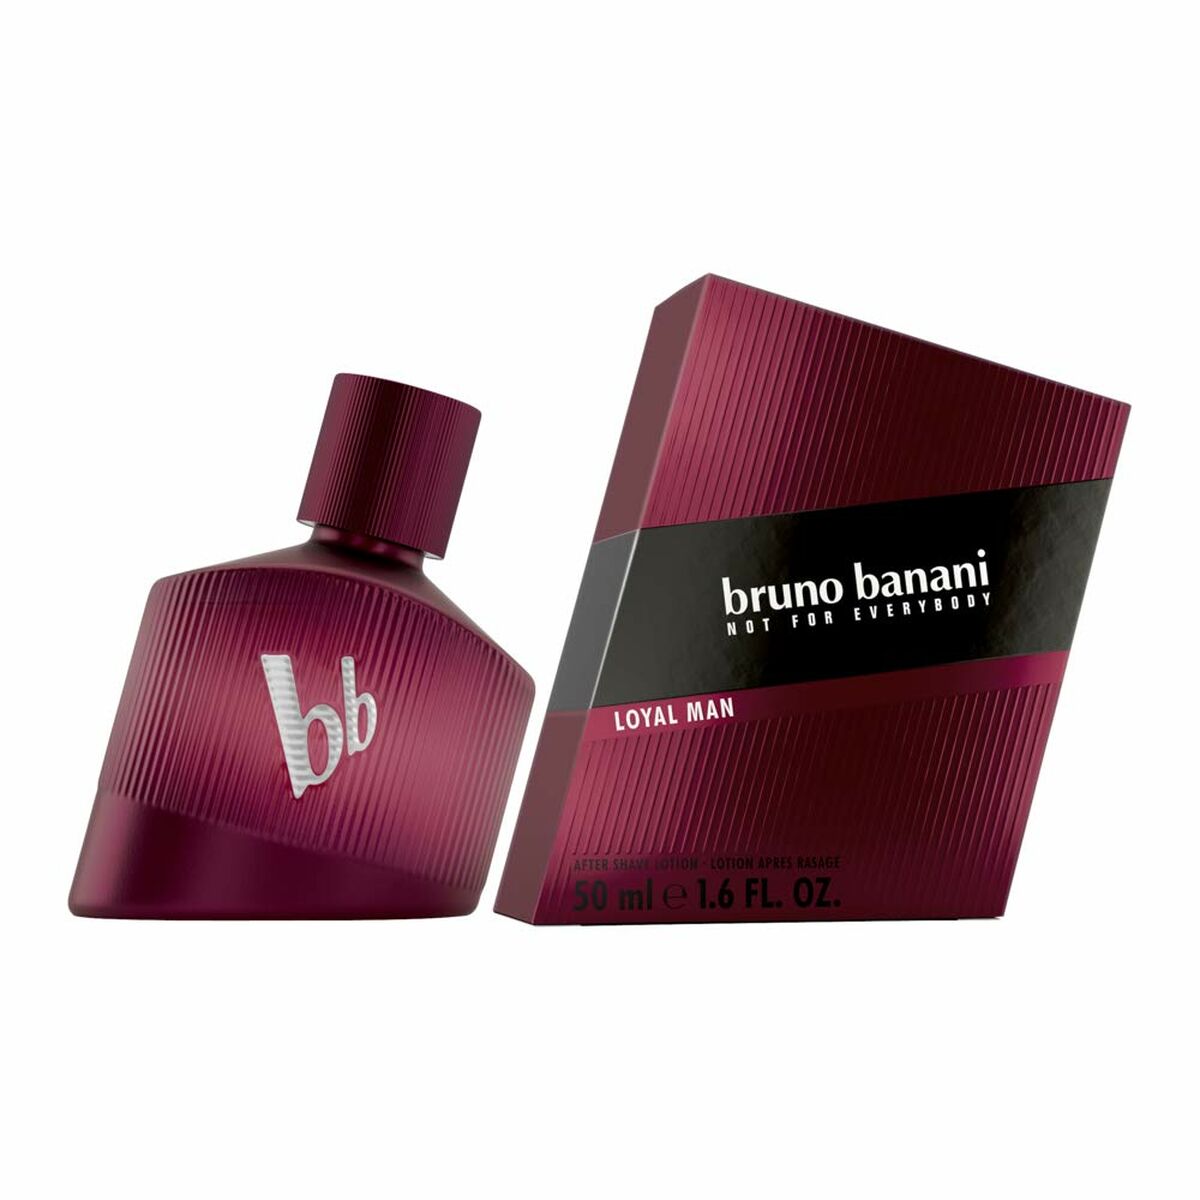 After Shave-Lotion Bruno Banani Loyal Man 50 ml